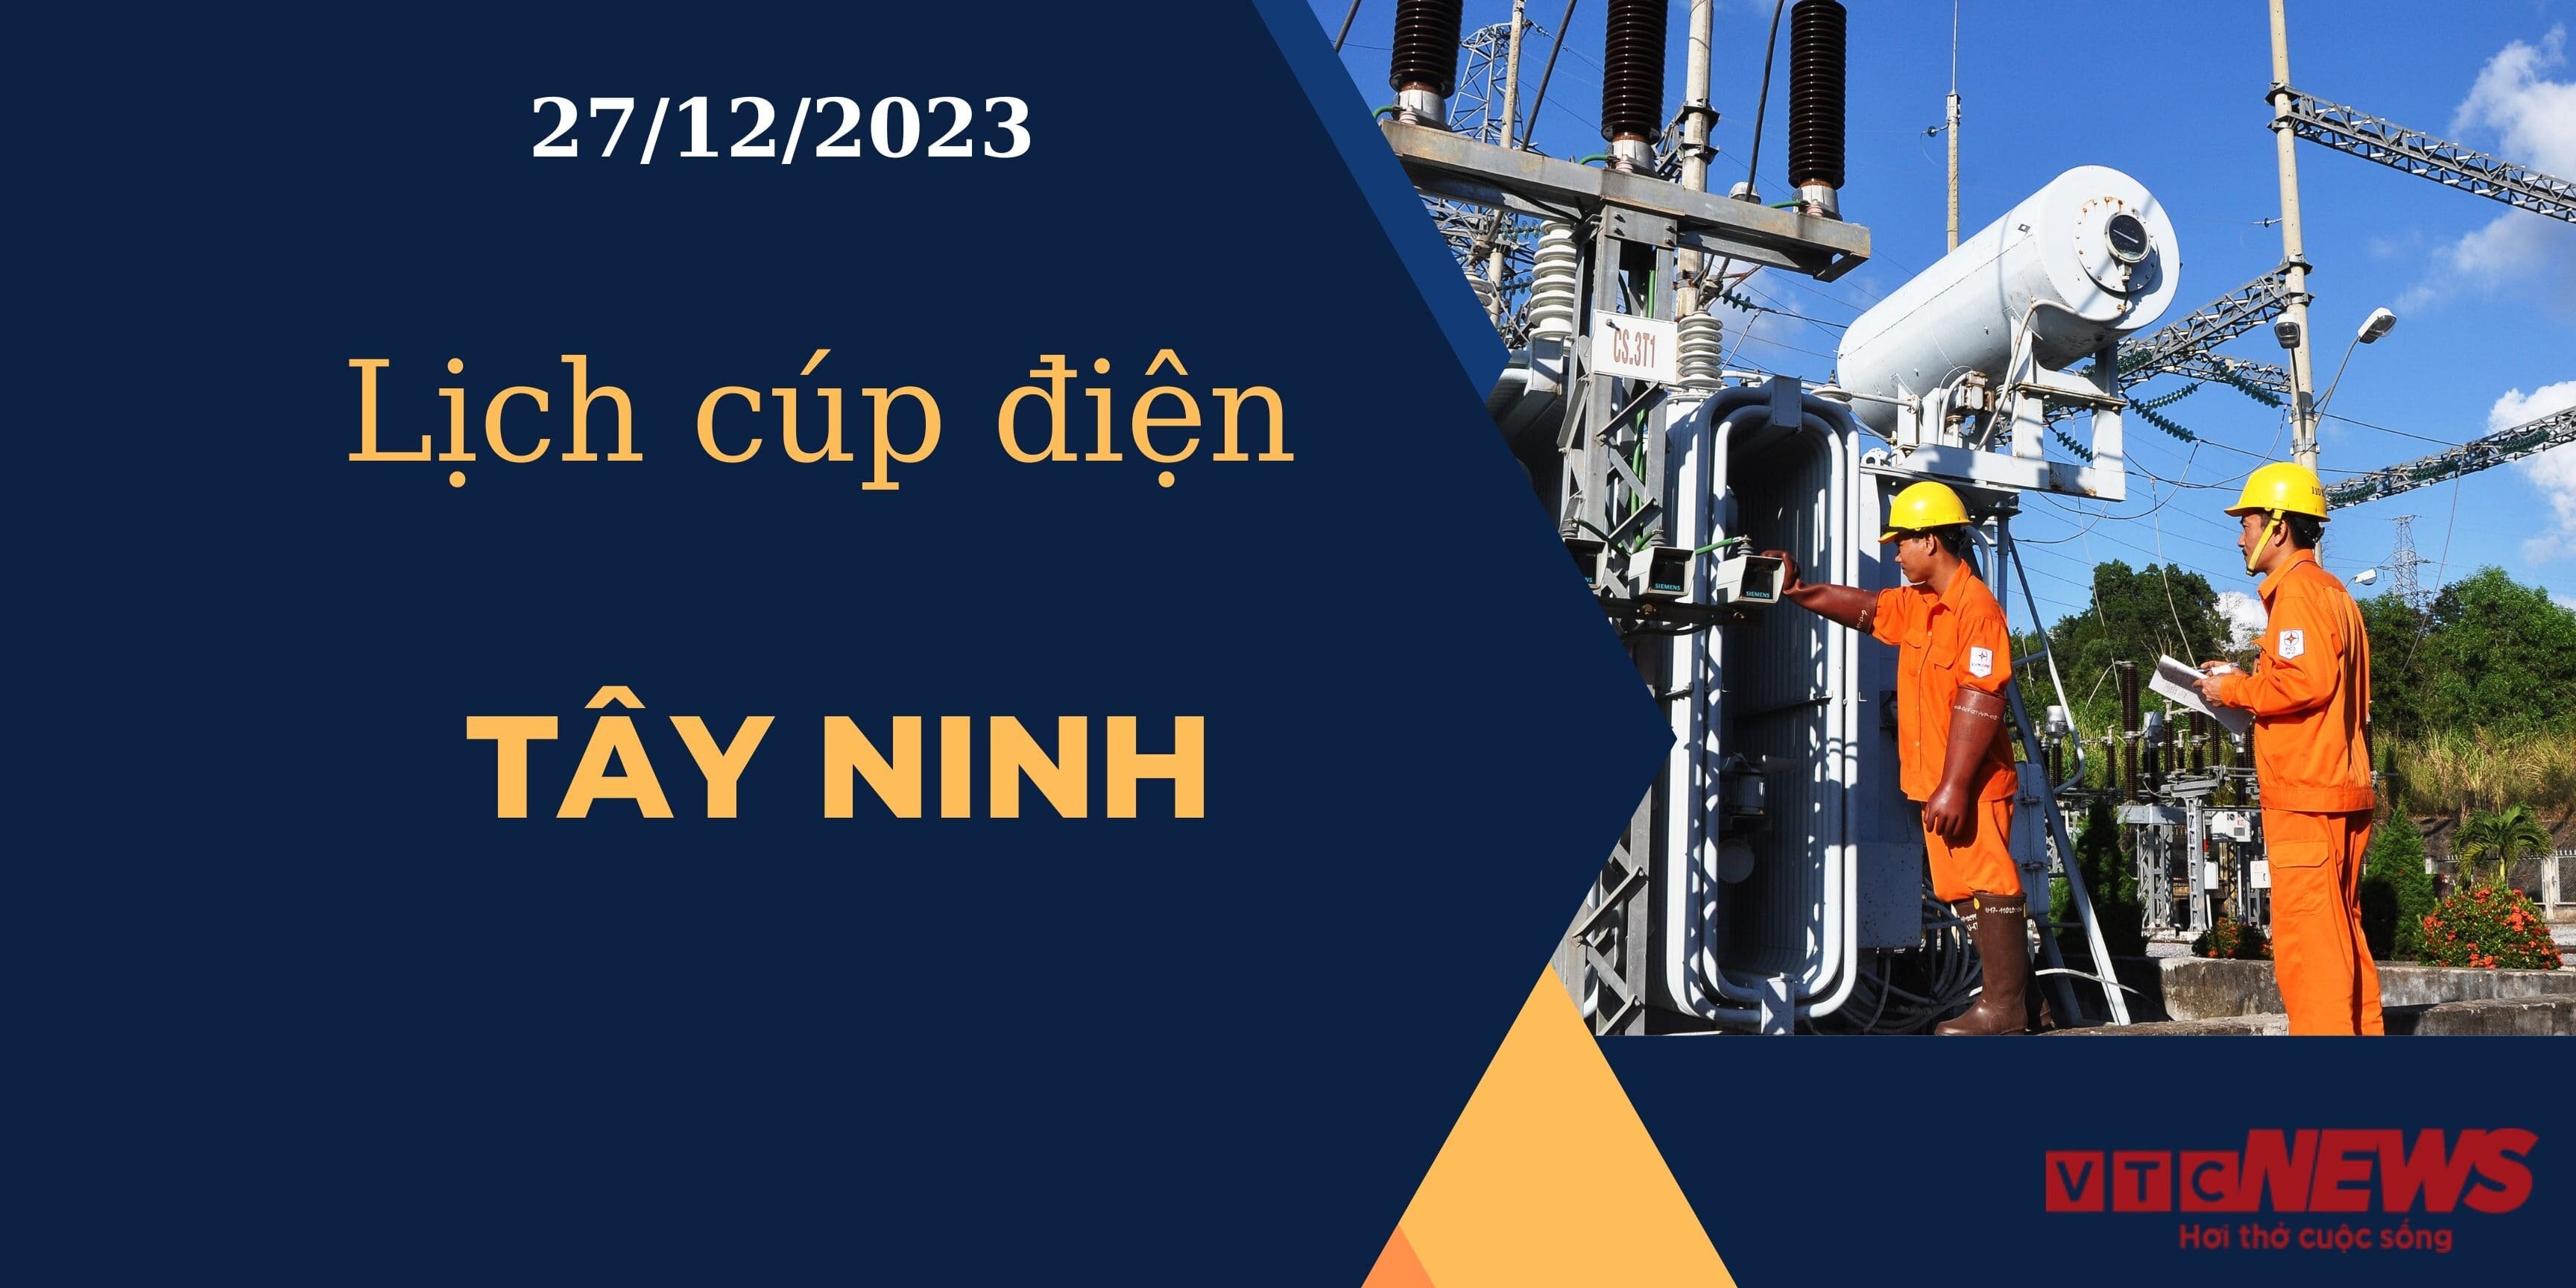 Lịch cúp điện hôm nay ngày 27/12/2023 tại Tây Ninh